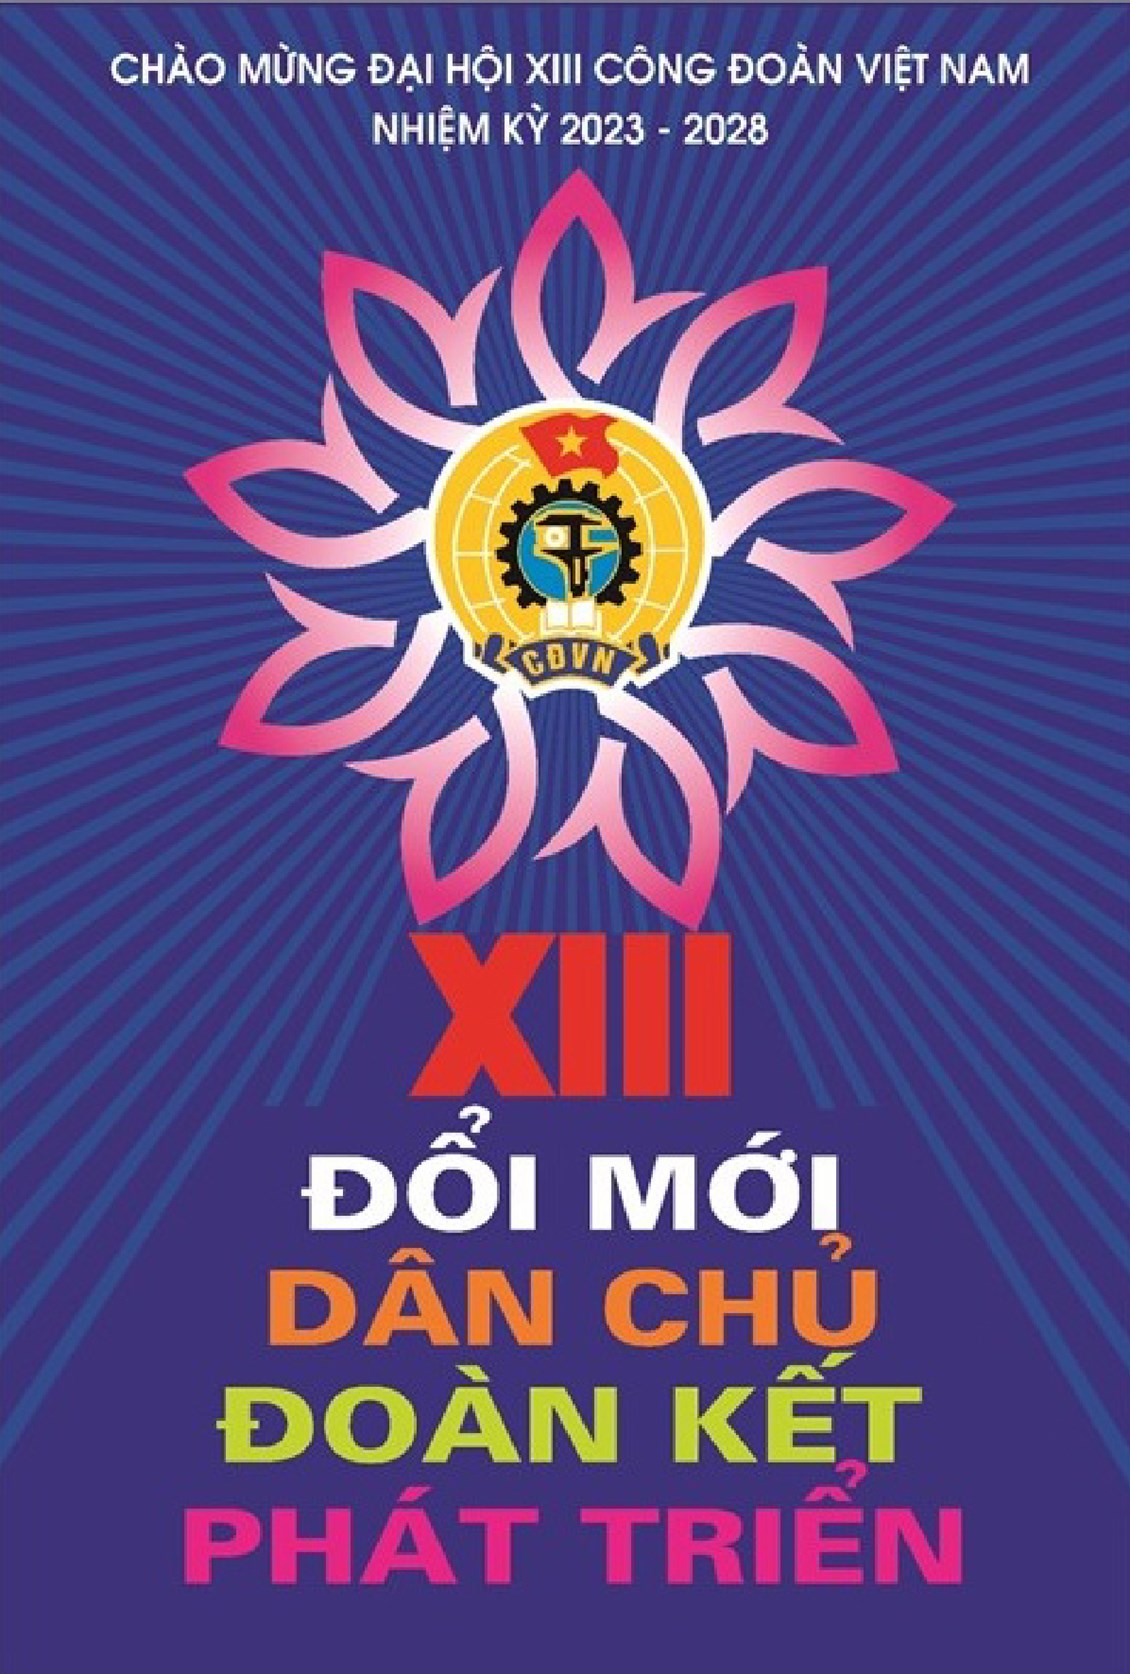 Tác phẩm đạt Giải Nhất thiết kế tranh cổ động chào mừng Đại hội XIII Công đoàn Việt Nam. Ảnh: Hà Anh